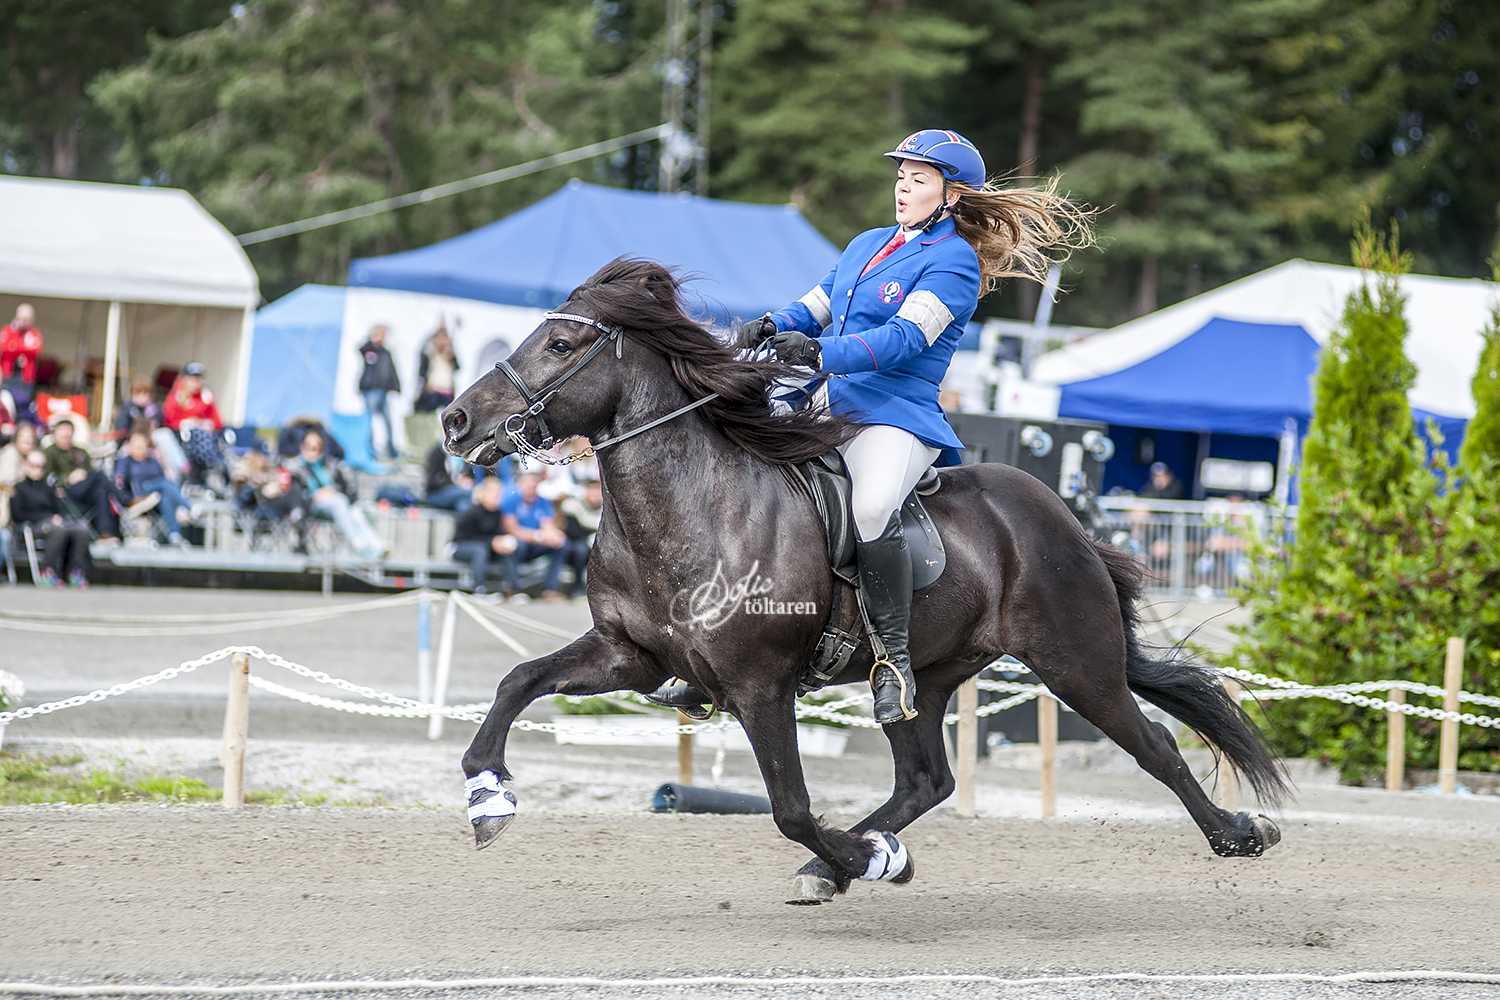 Fullt ös! Ásdis och kkjjkjkkj rider för vinst iB-finalen Foto: Sofie Lahtinen Carlsson